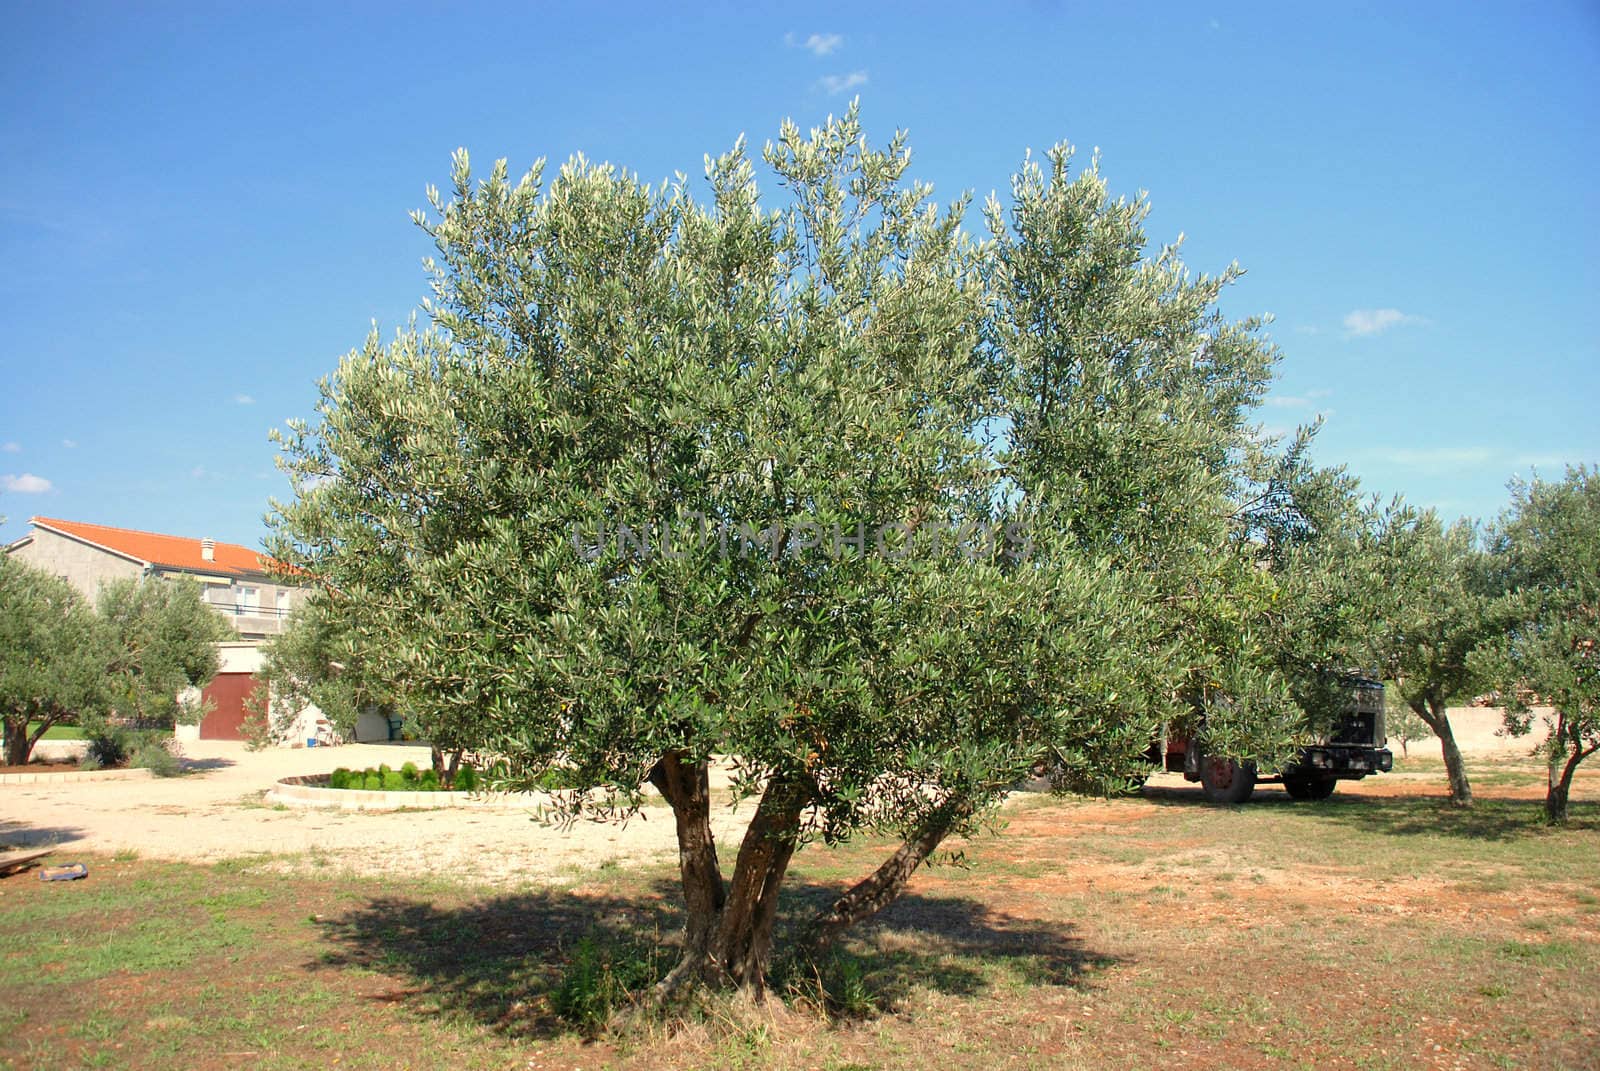 The olive tree groves. by wojciechkozlowski